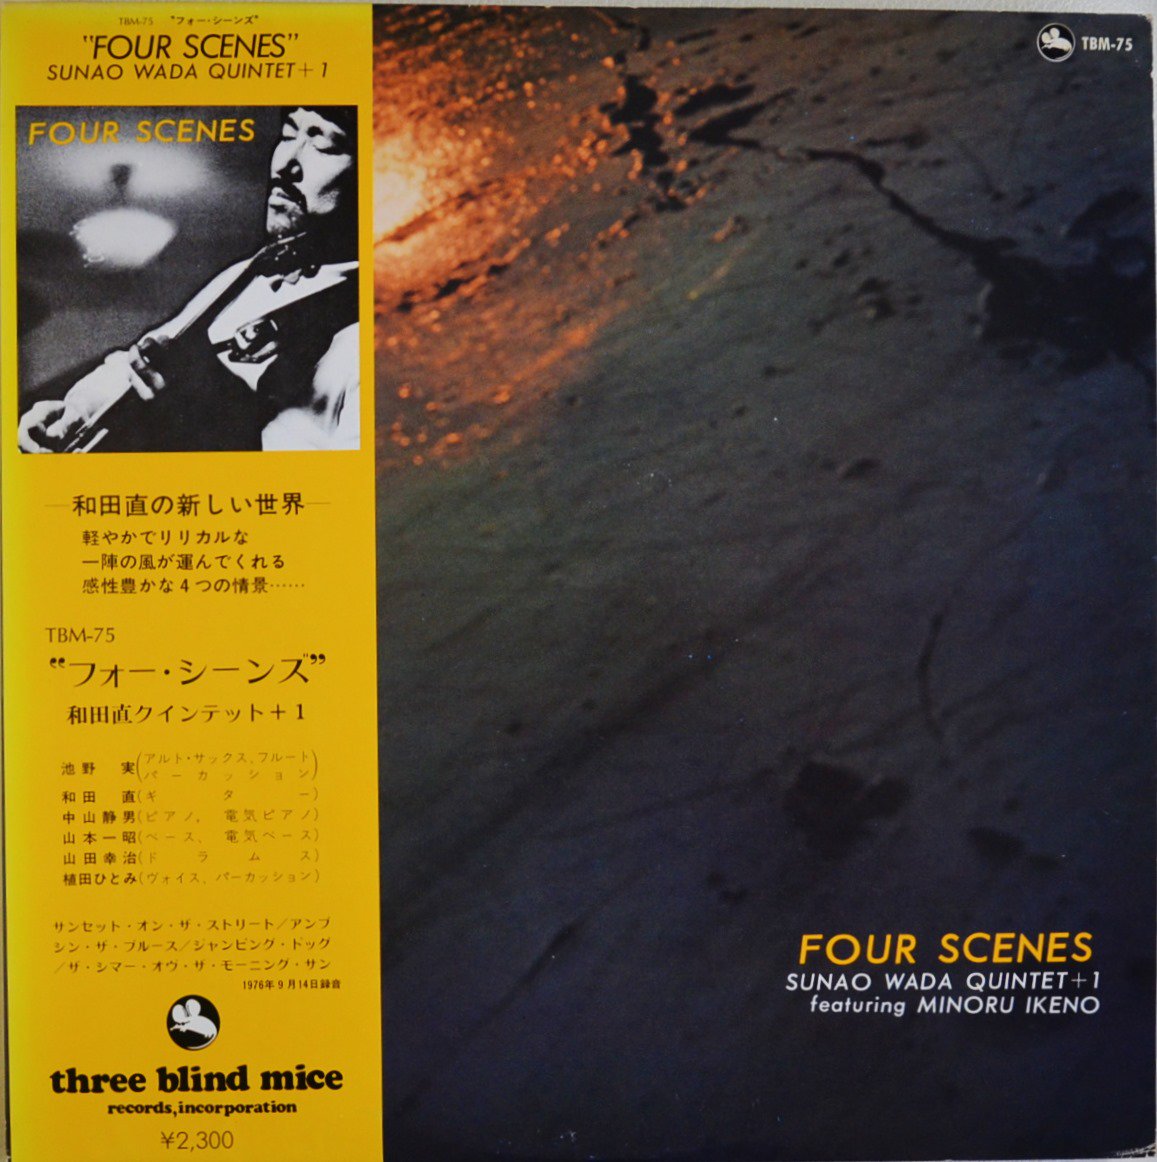 和田直クインテット+1 SUNAO WADA QUINTET+1 / フォー・シーンズ FOUR SCENES (LP)